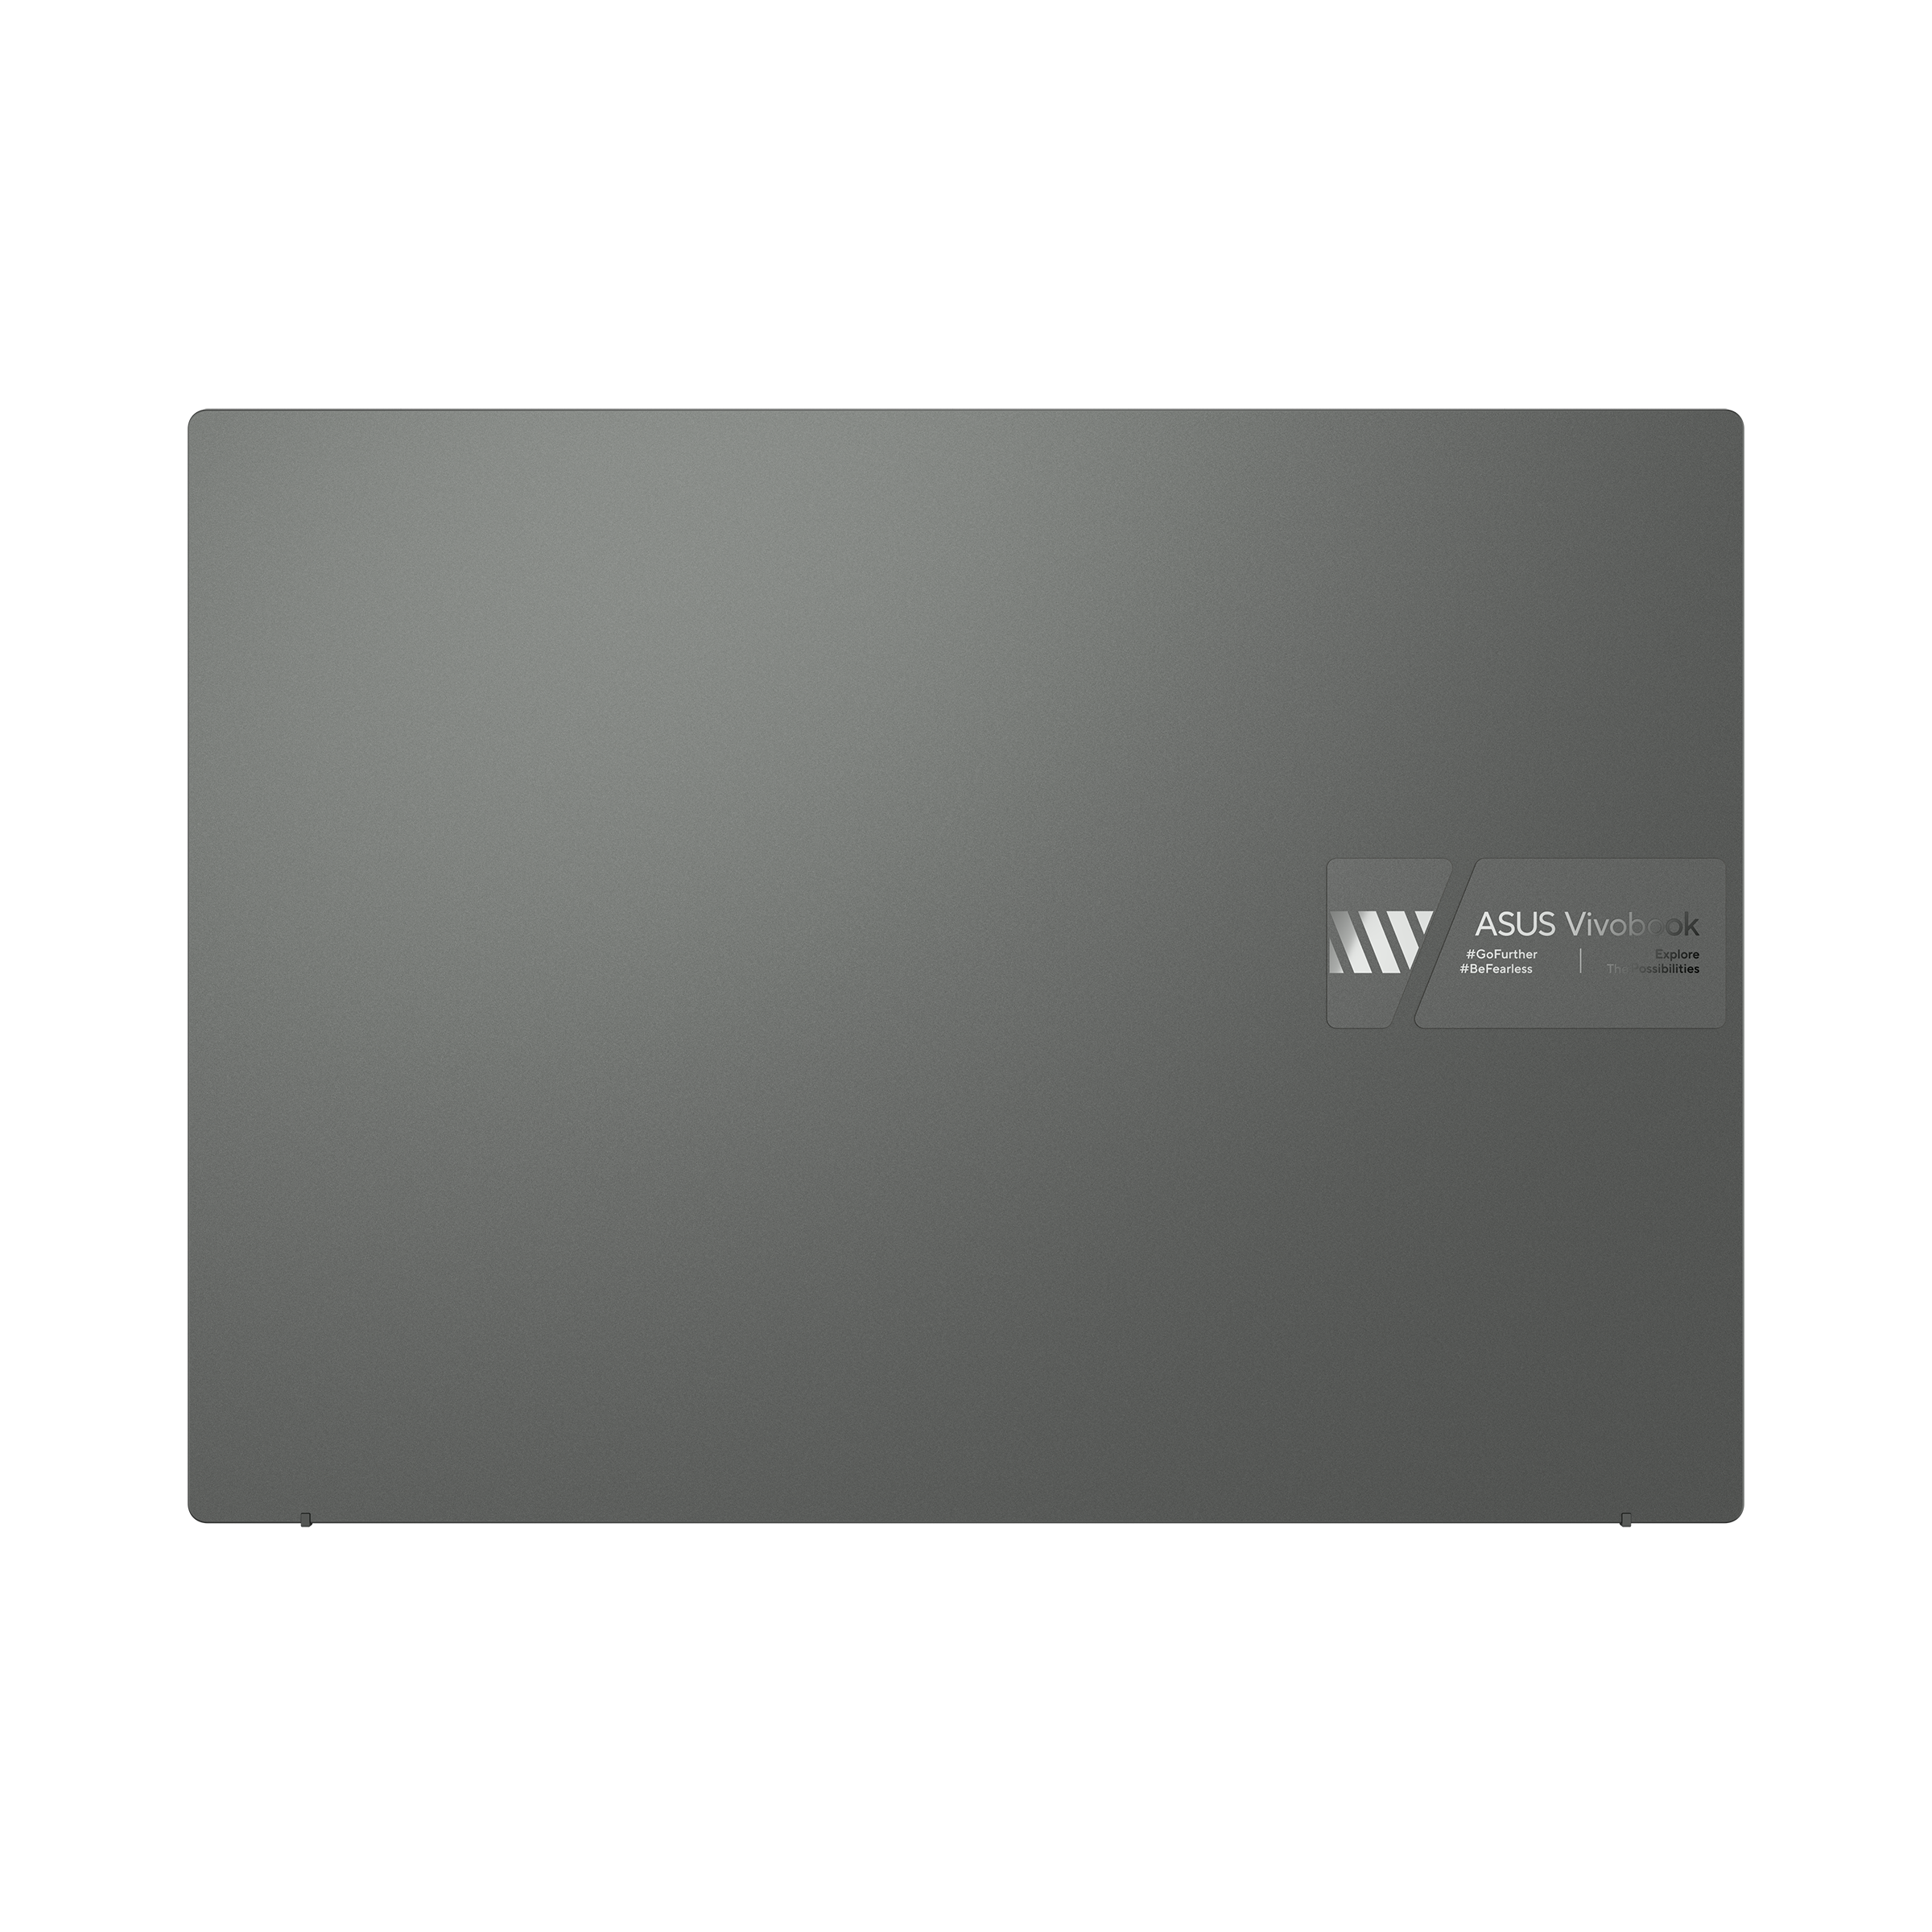 Vivobook 14 (M1402, AMD Ryzen 4000 series)｜Laptops For Home｜ASUS USA